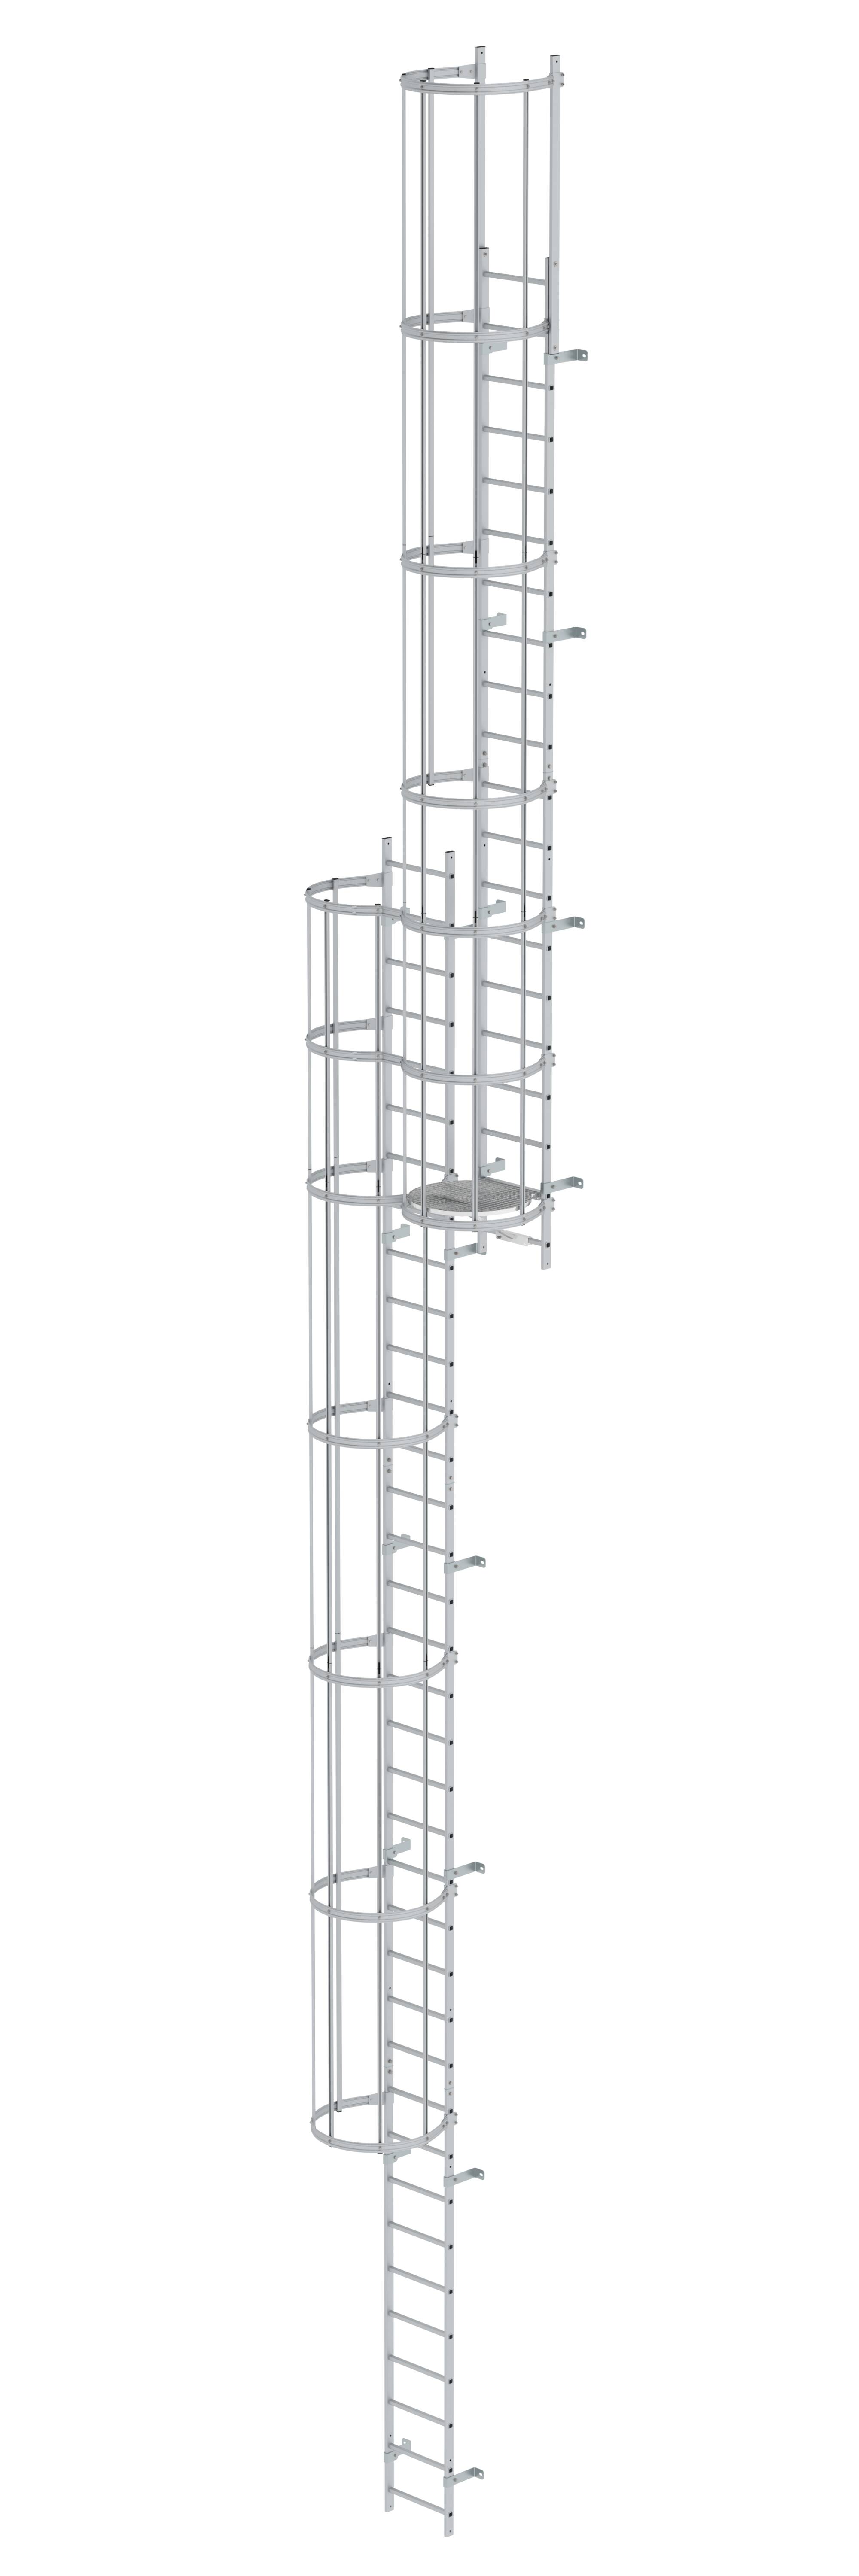 Mehrzügige Steigleiter mit Rückenschutz (Bau) Aluminium eloxiert 14,64m